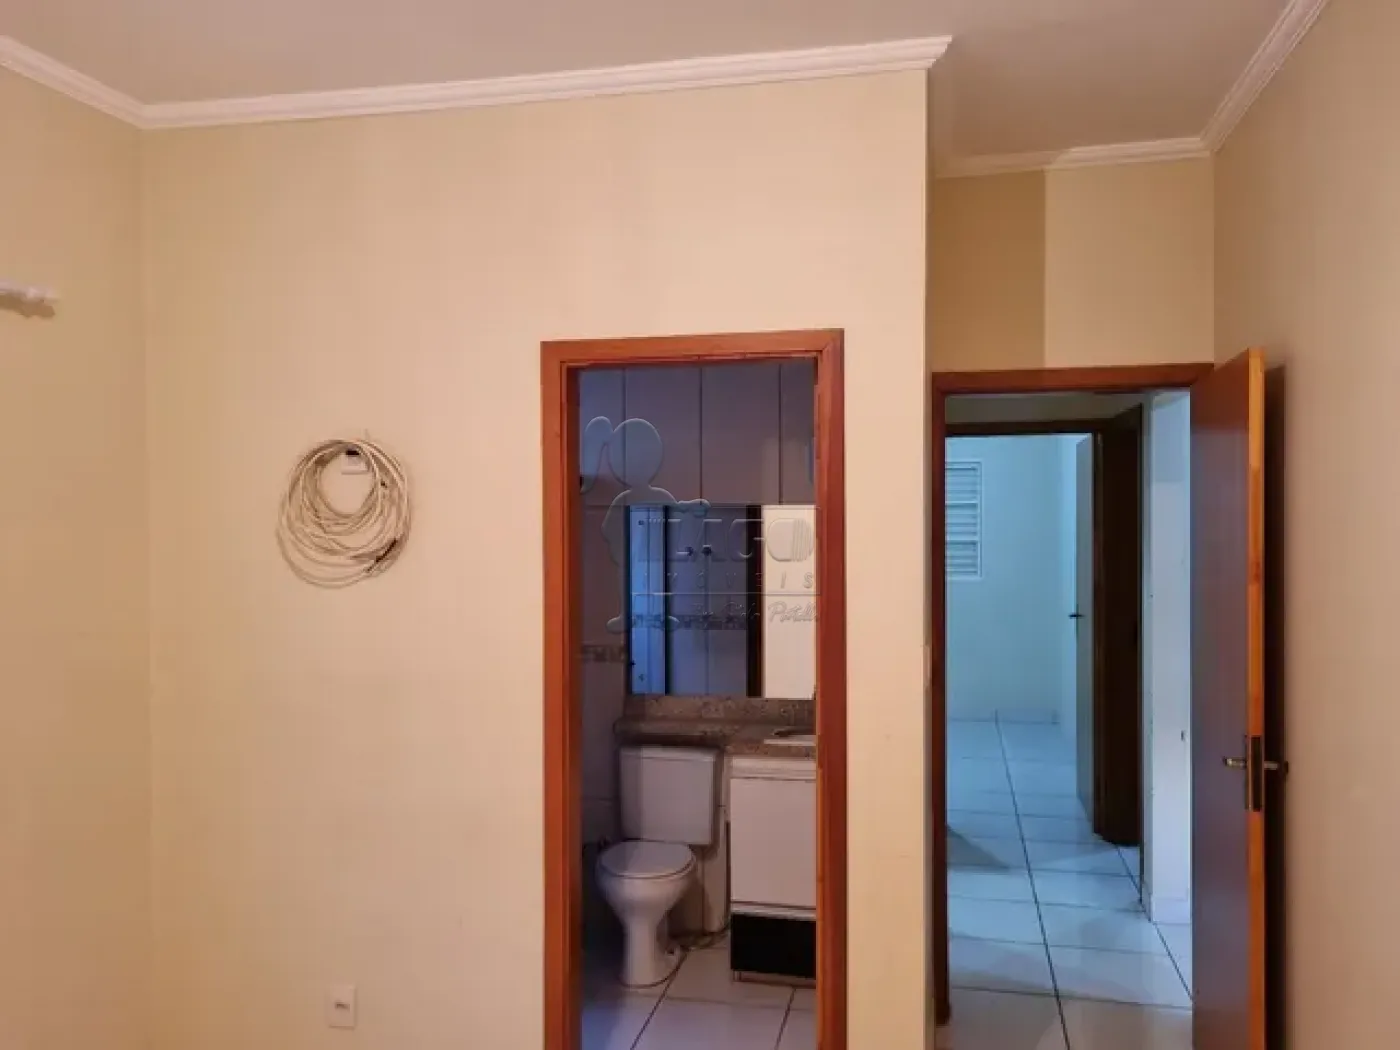 Alugar Casas / Padrão em Ribeirão Preto R$ 2.400,00 - Foto 9